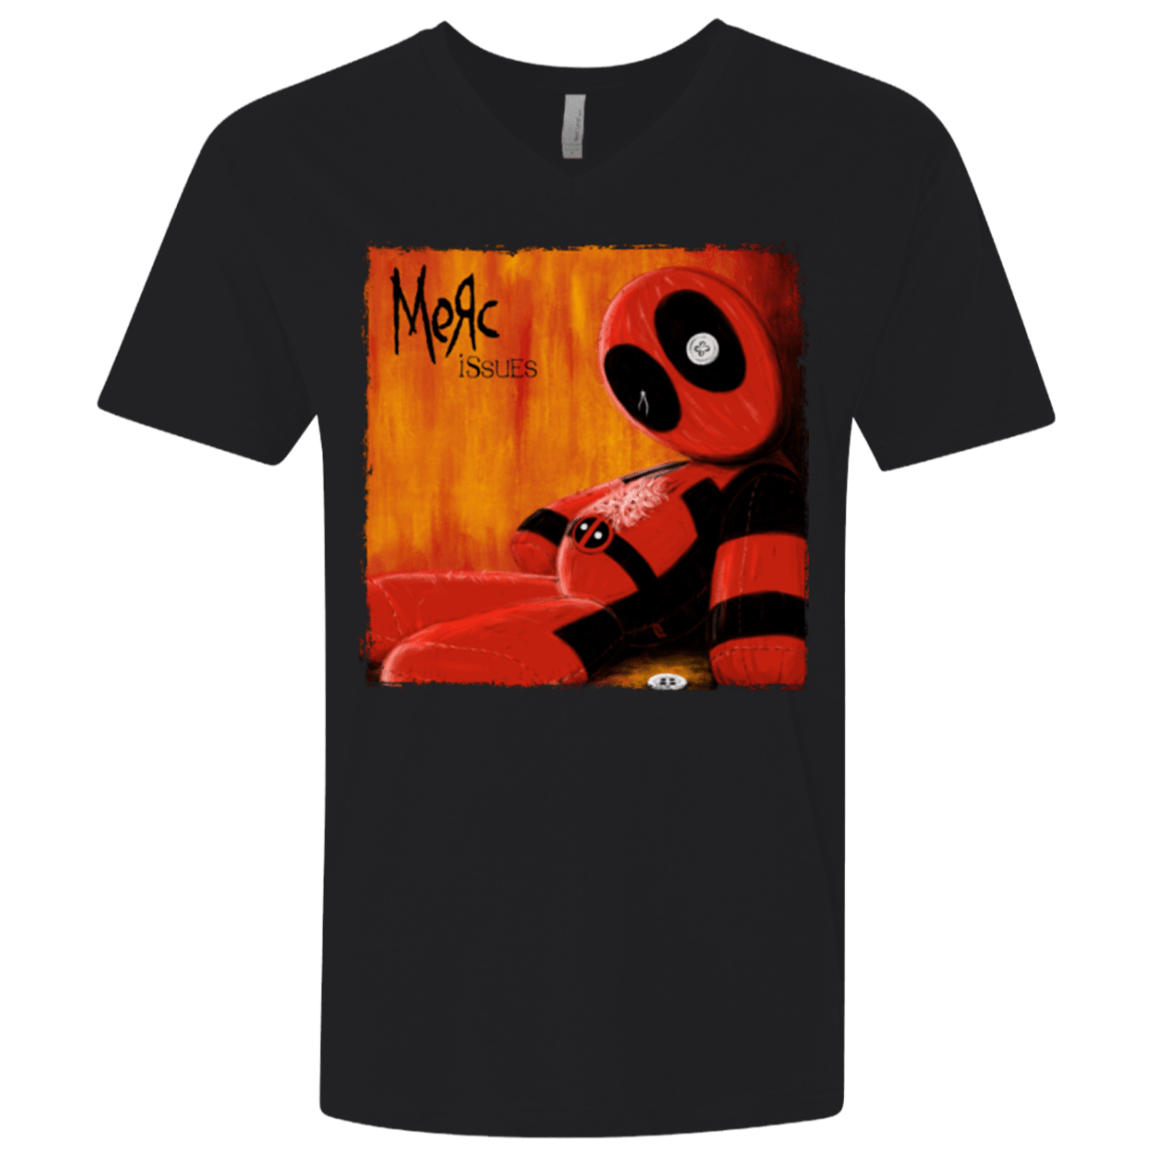 T-Shirts Black / X-Small Issues Men's Premium V-Neck